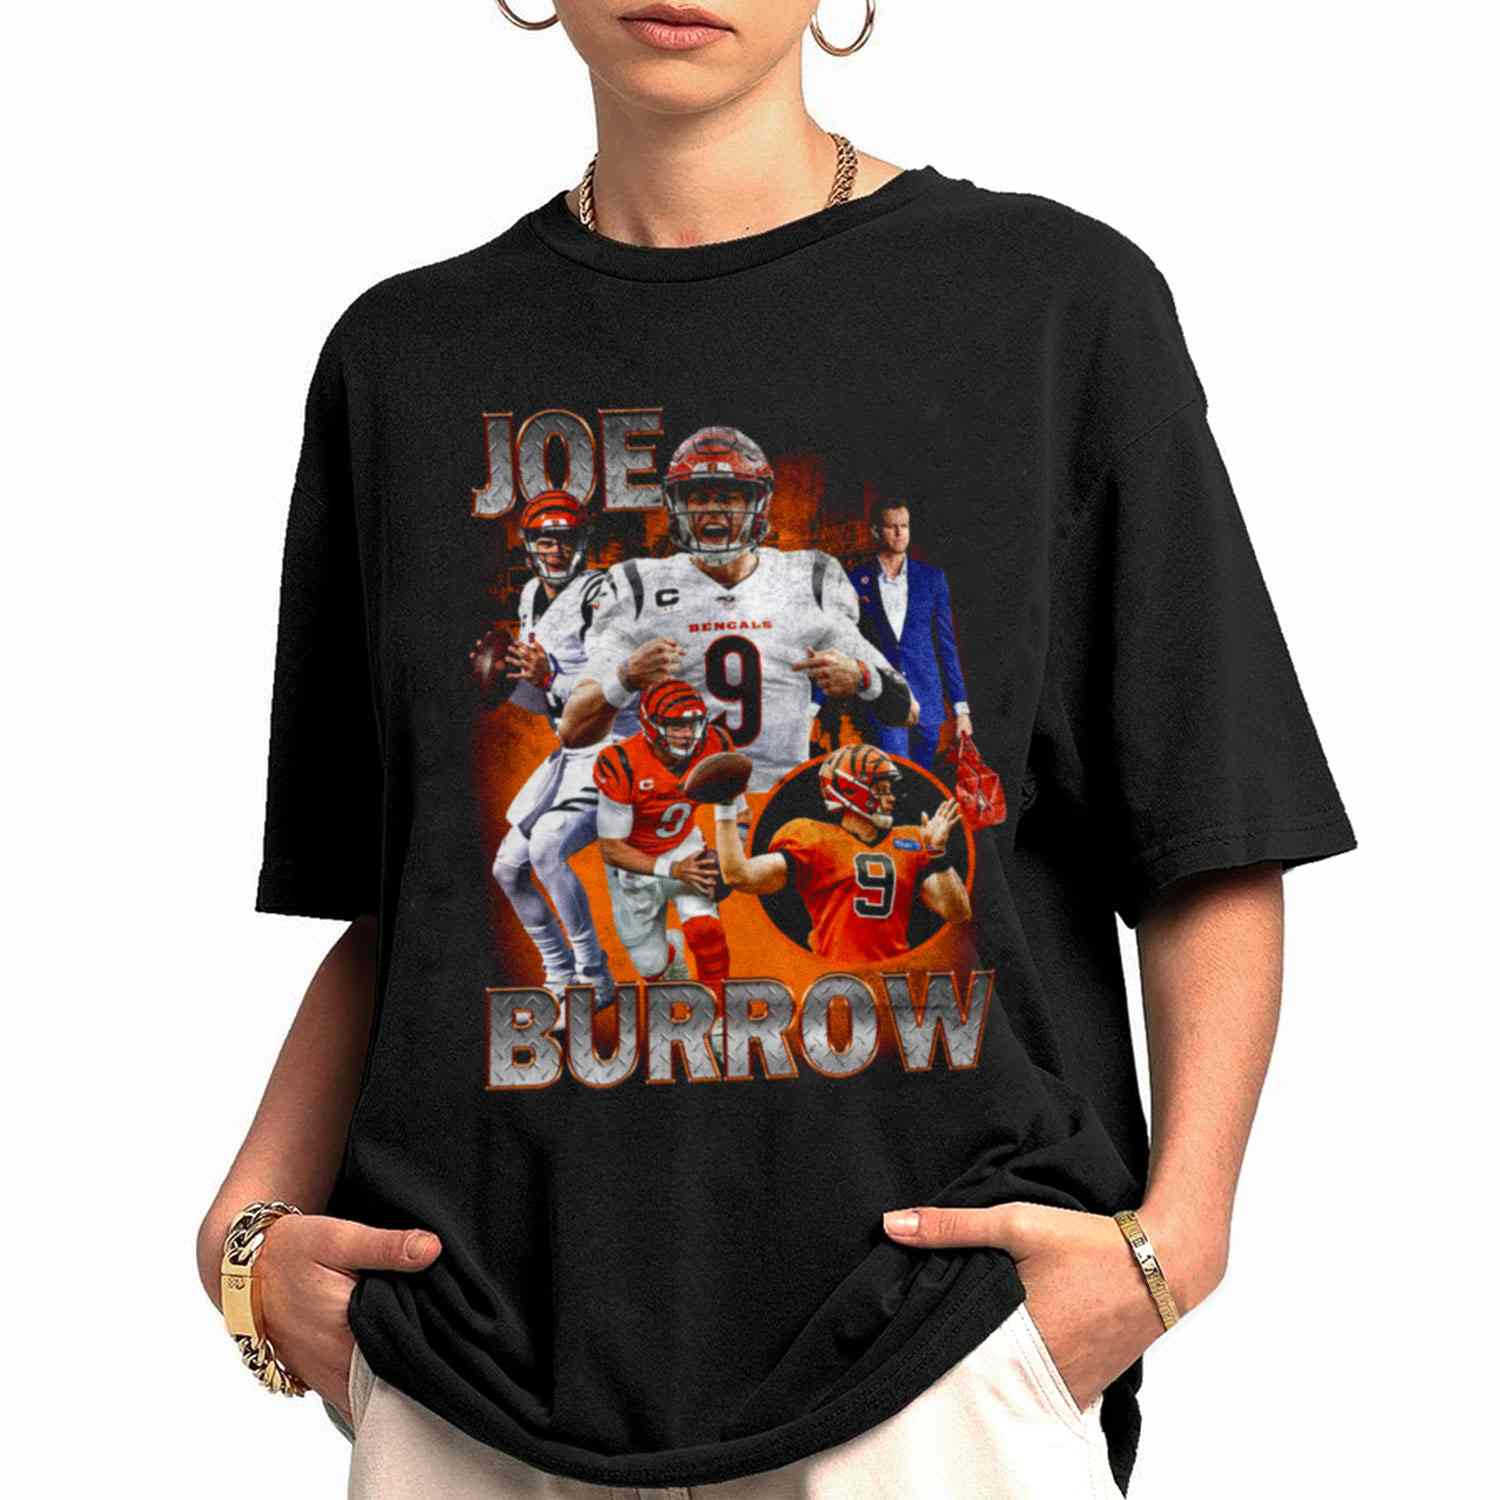 Cincinnati Bengals Football Team Nfl Super Bowl T Shirt Vintage